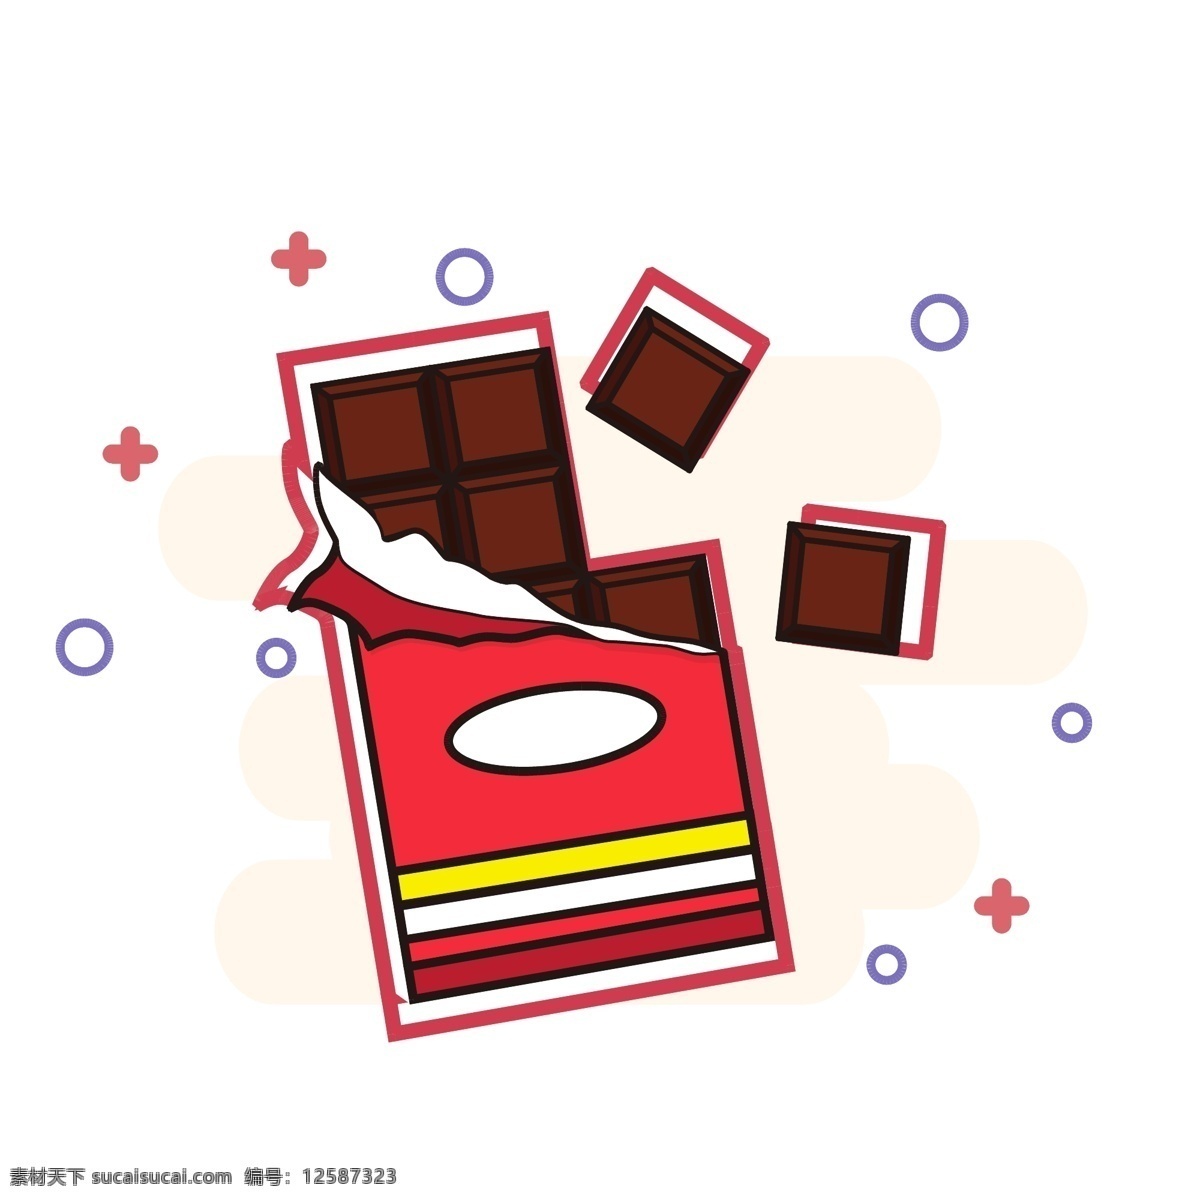 原创 矢量 卡通 巧克力 商用 朱古力 可可 零食 甜点 美食